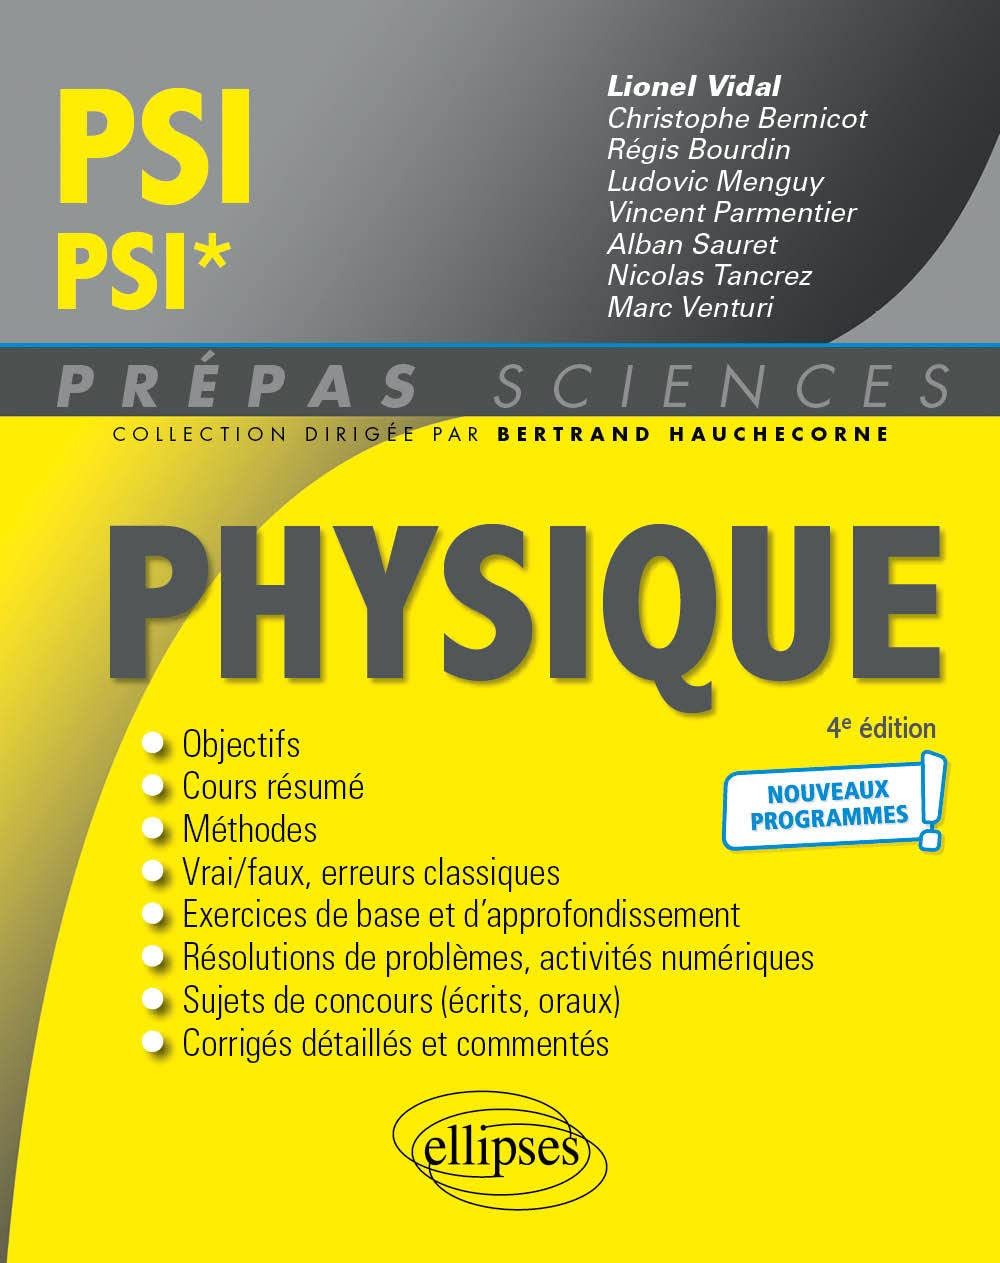 Physique PSI, PSI* : nouveaux programmes